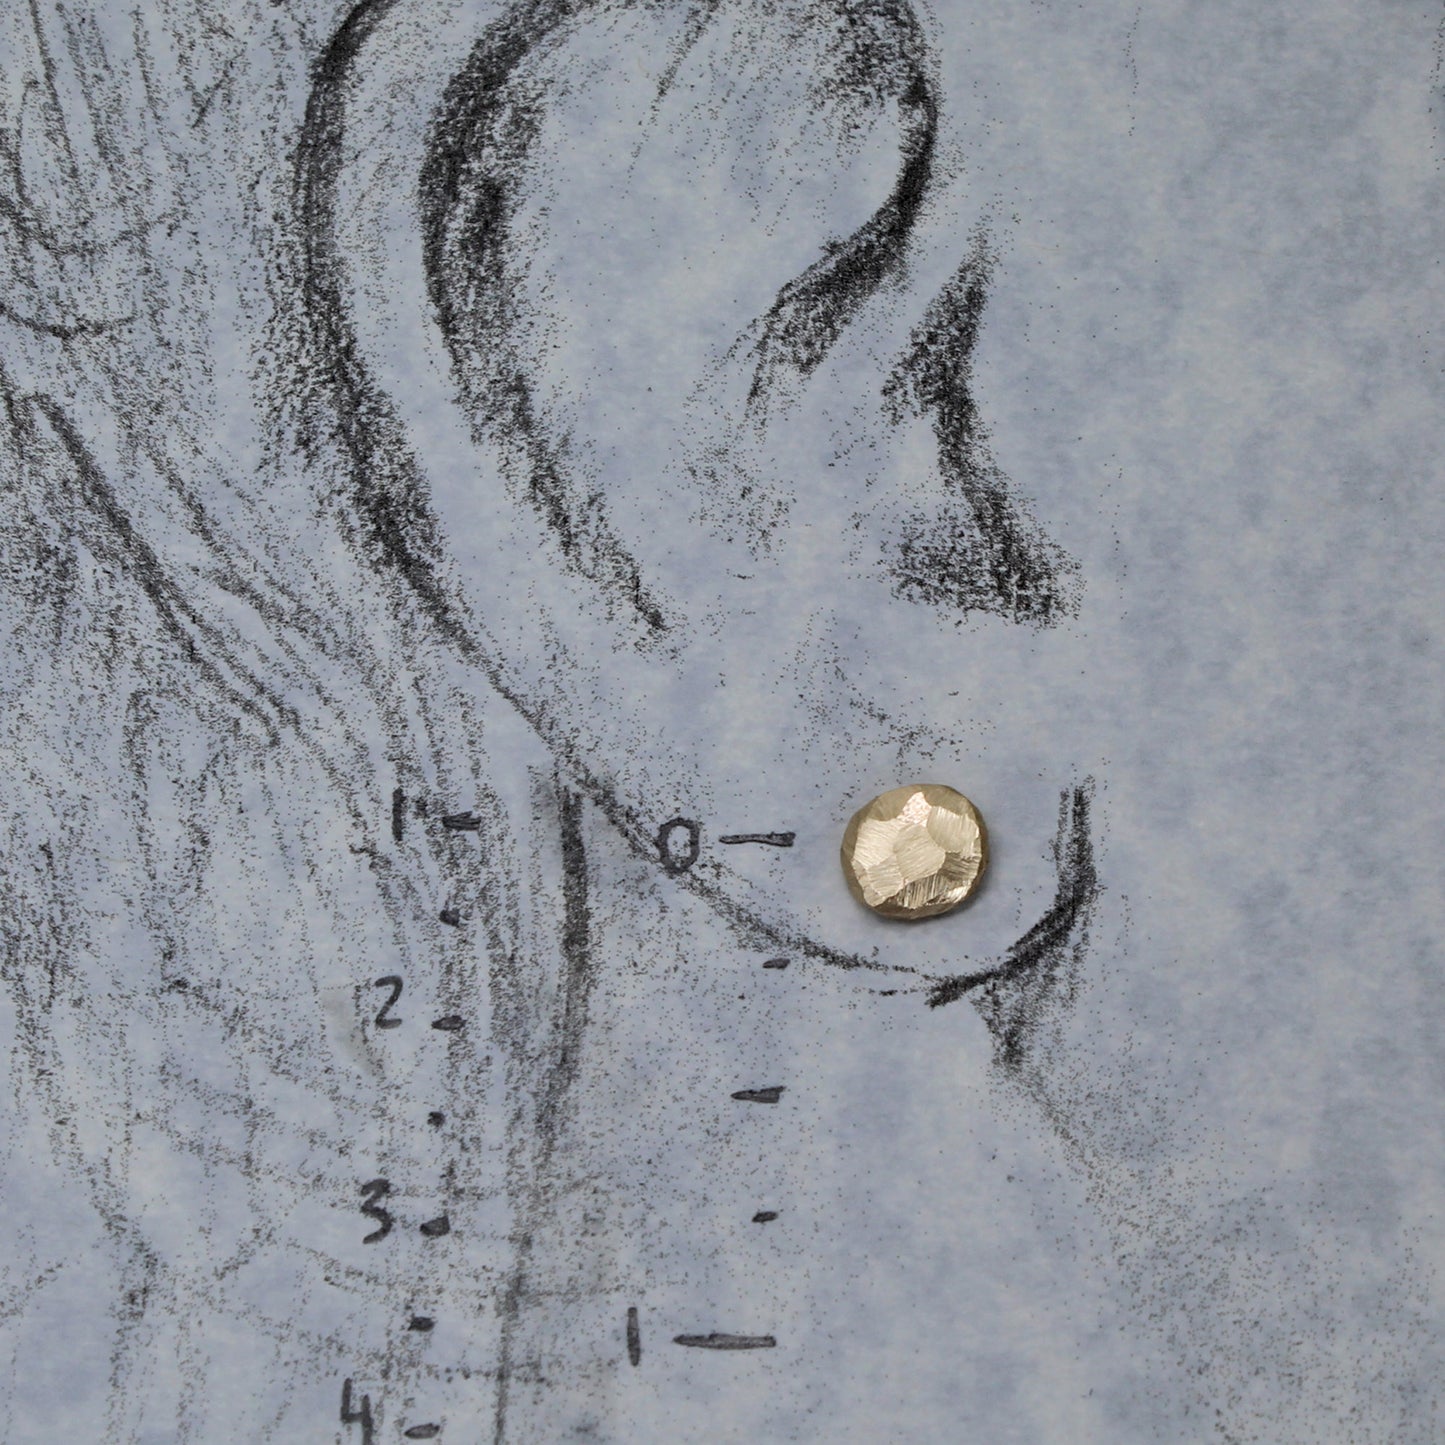 14k post earrings shown on drawn ear model